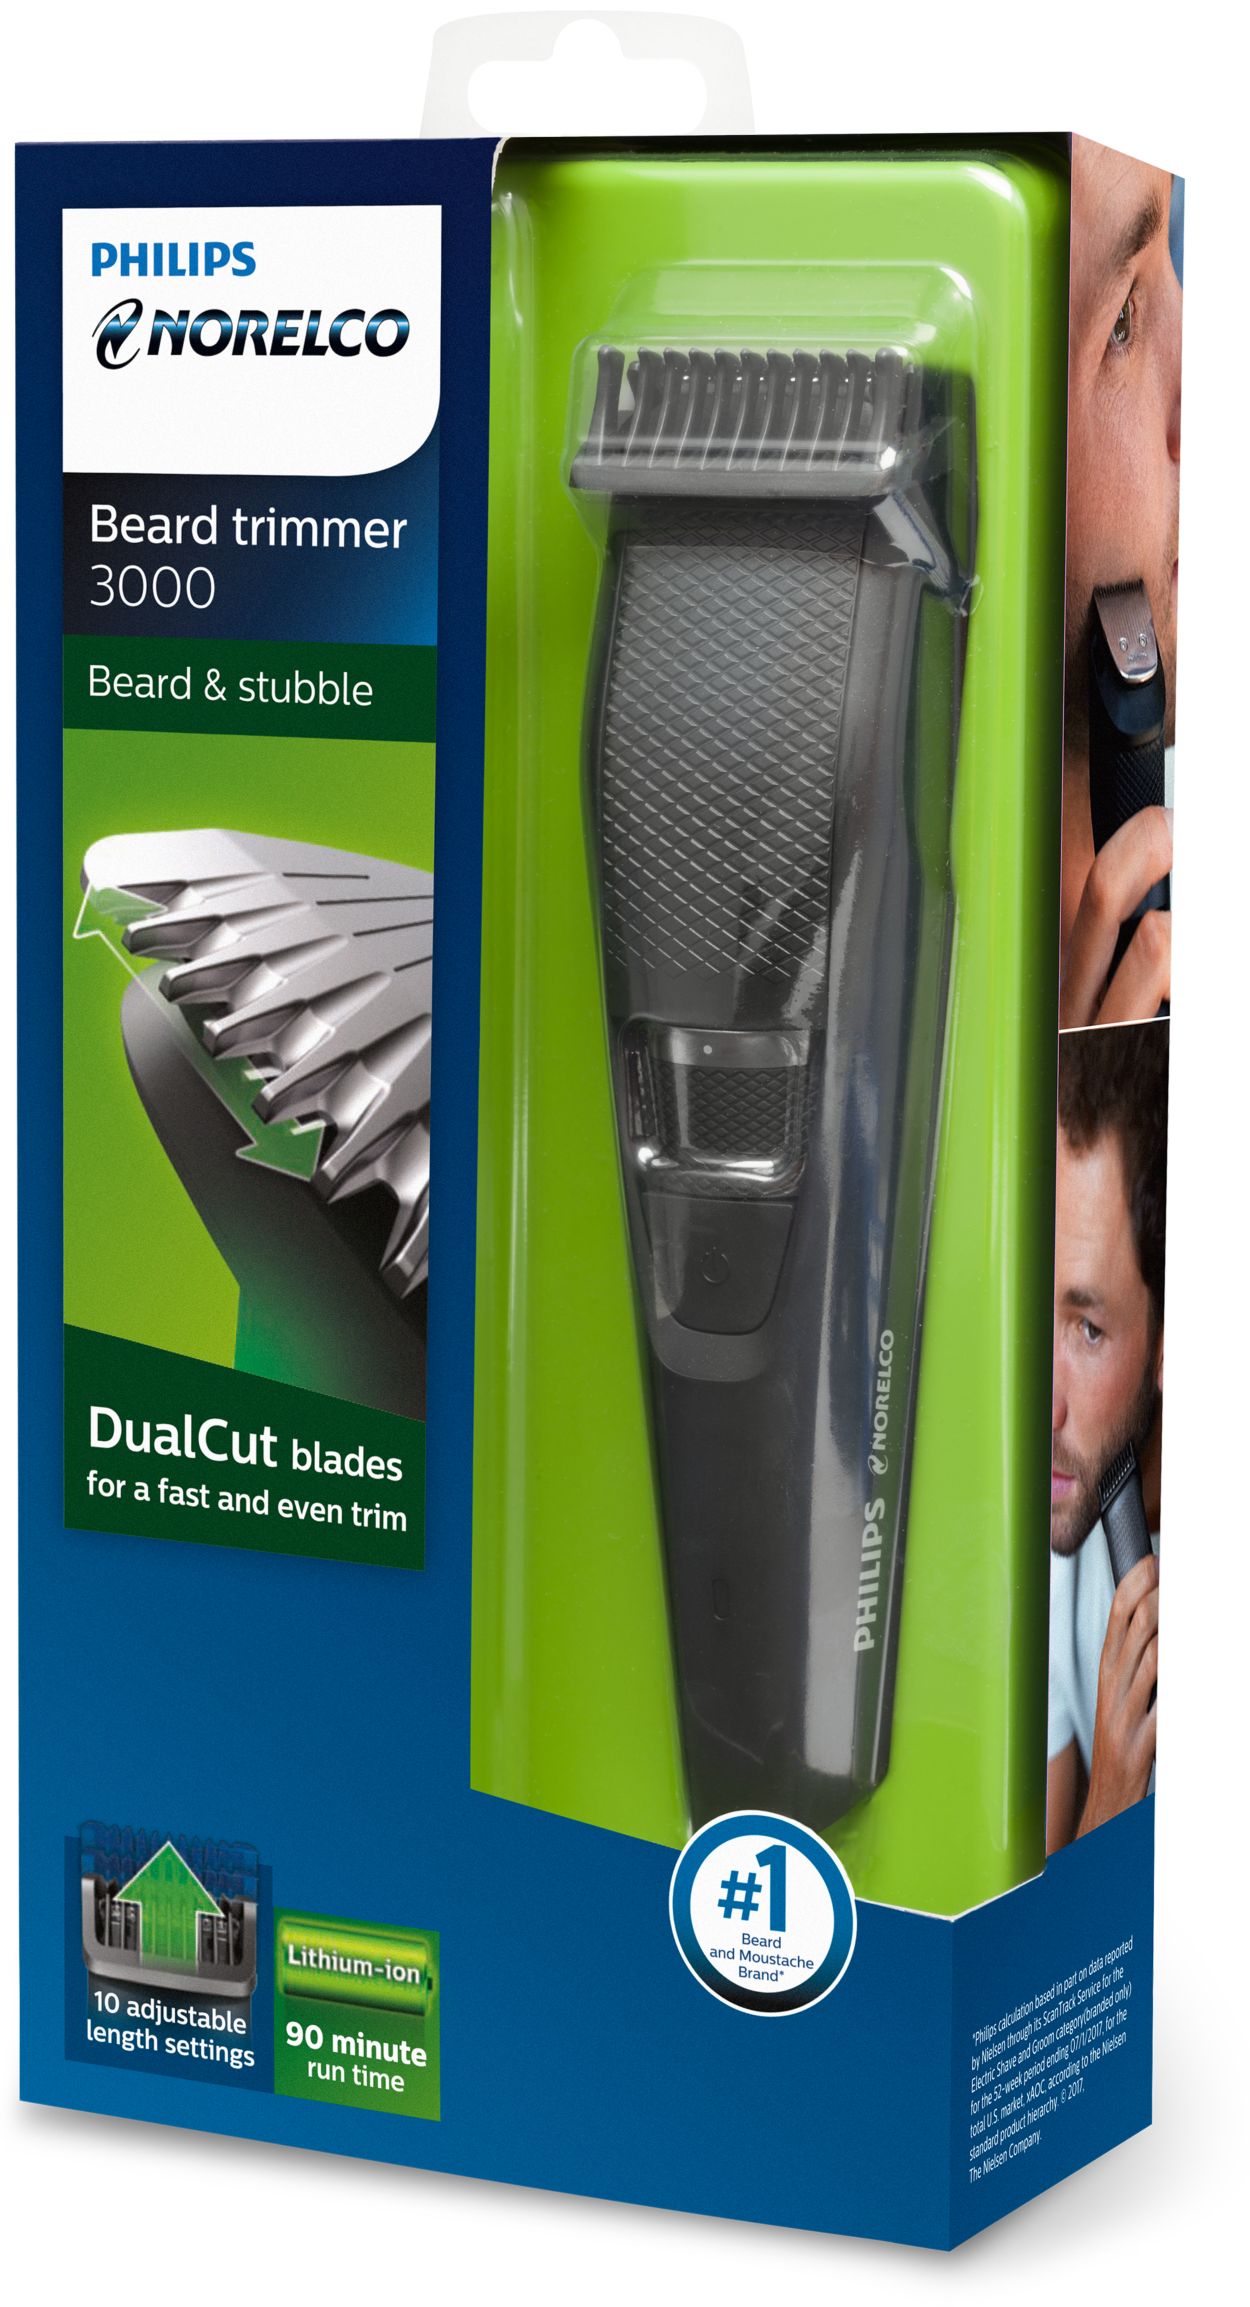 depositum arbejdsløshed karton Beardtrimmer 3000 Beard & stubble trimmer, Series 3000 BT3210/41 | Norelco